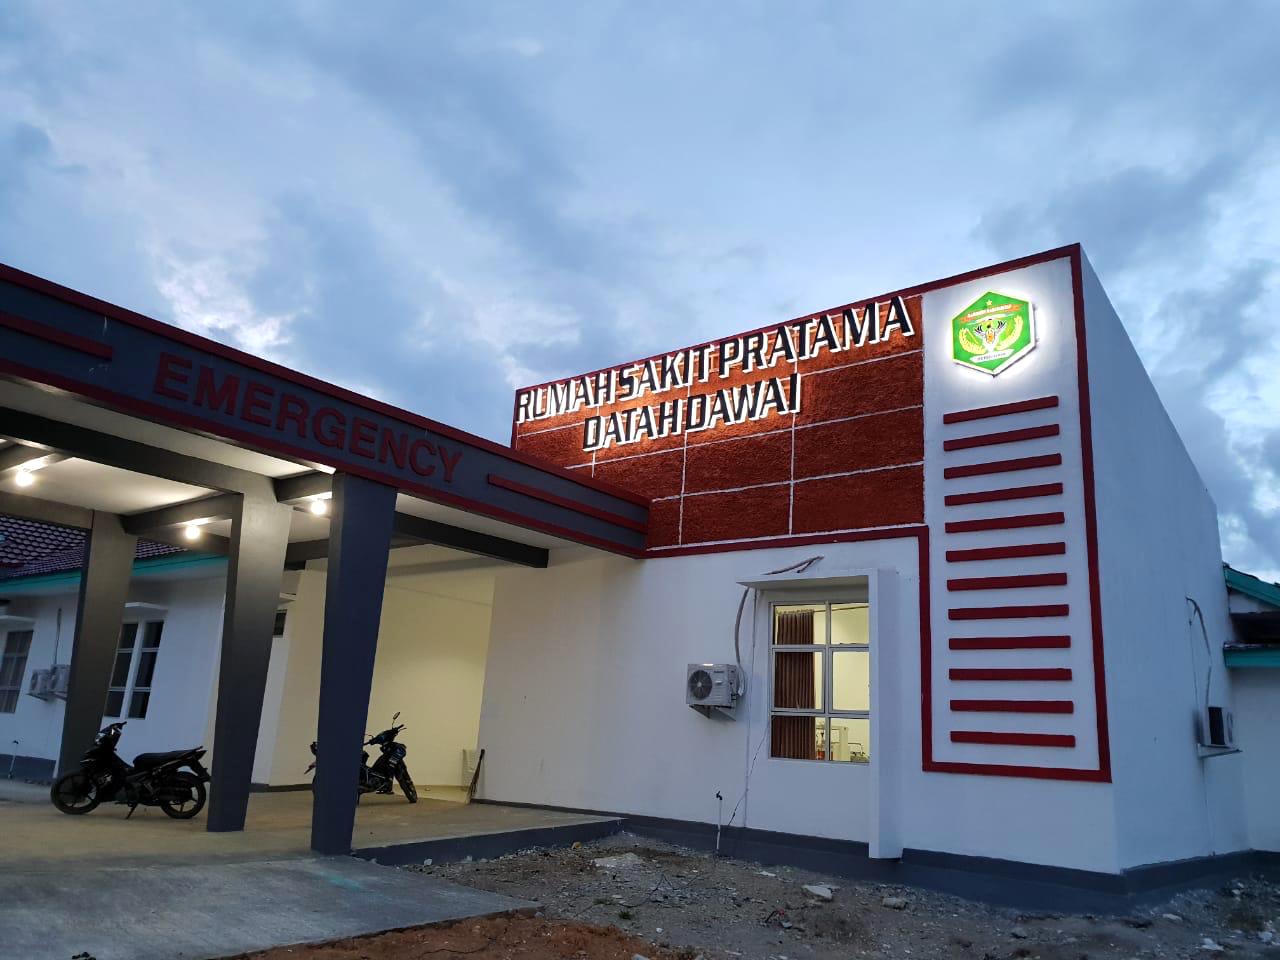 Rumah Sakit Pratama Datah Dave di Kecamatan Long Pahangai, Mahakam Ulu. Di rumah sakit inilah dr Prabjot Singh mengabdi. FOTO: ARSIP KANDELA-KALTIMKECE.ID